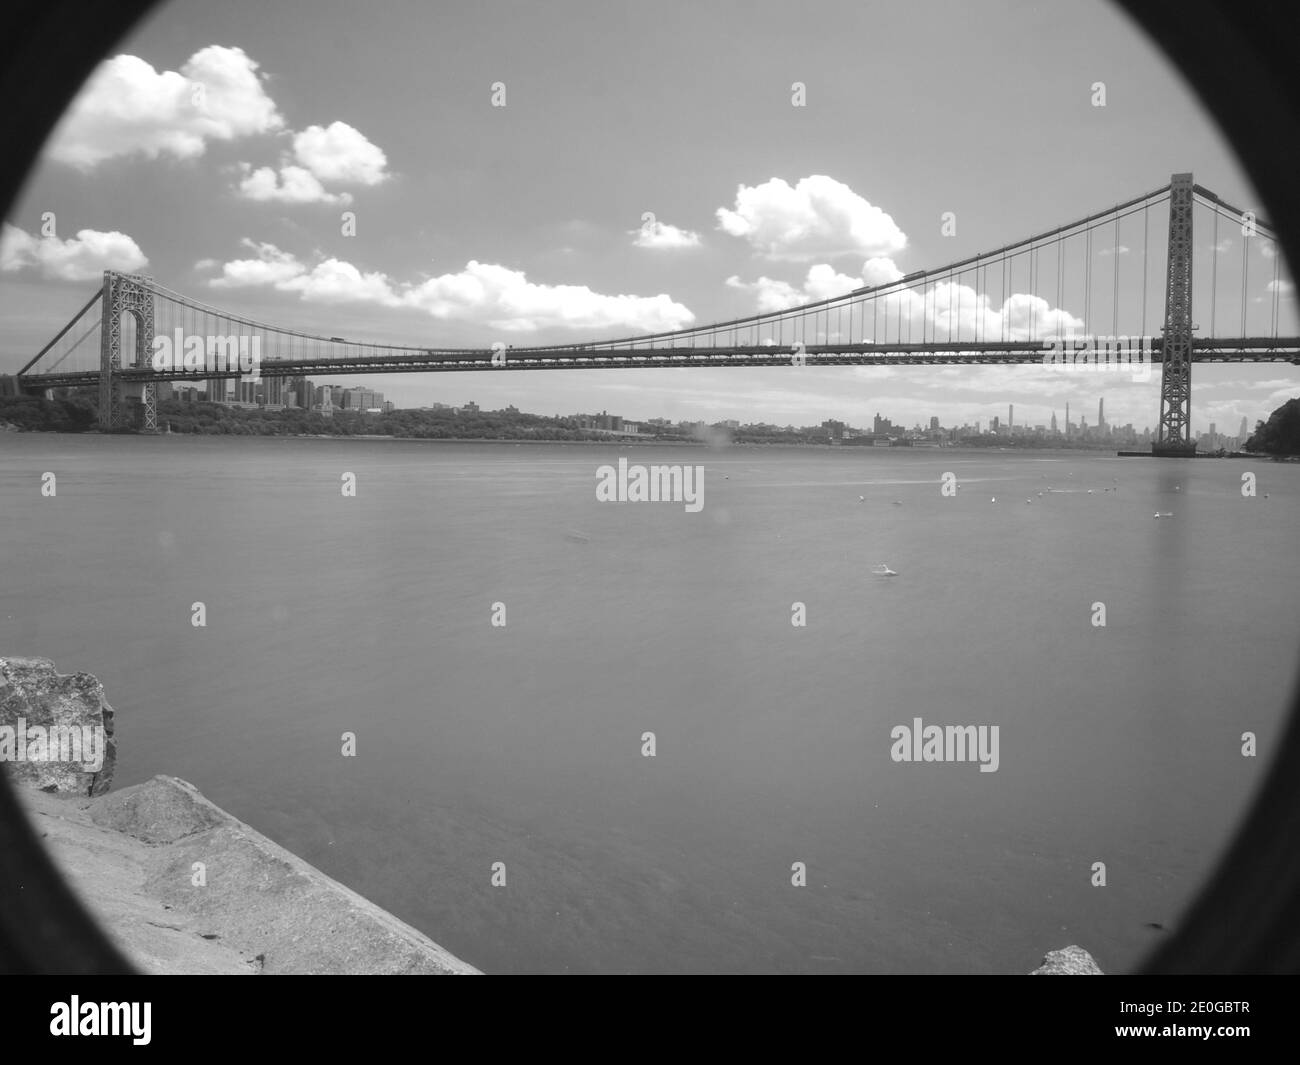 Le légendaire pont George Washington de la ville de New York, au-dessus de l'Hudson River, entre fort Lee, New Jersey et le Bronx à New York. Ouvert en 1931. Banque D'Images